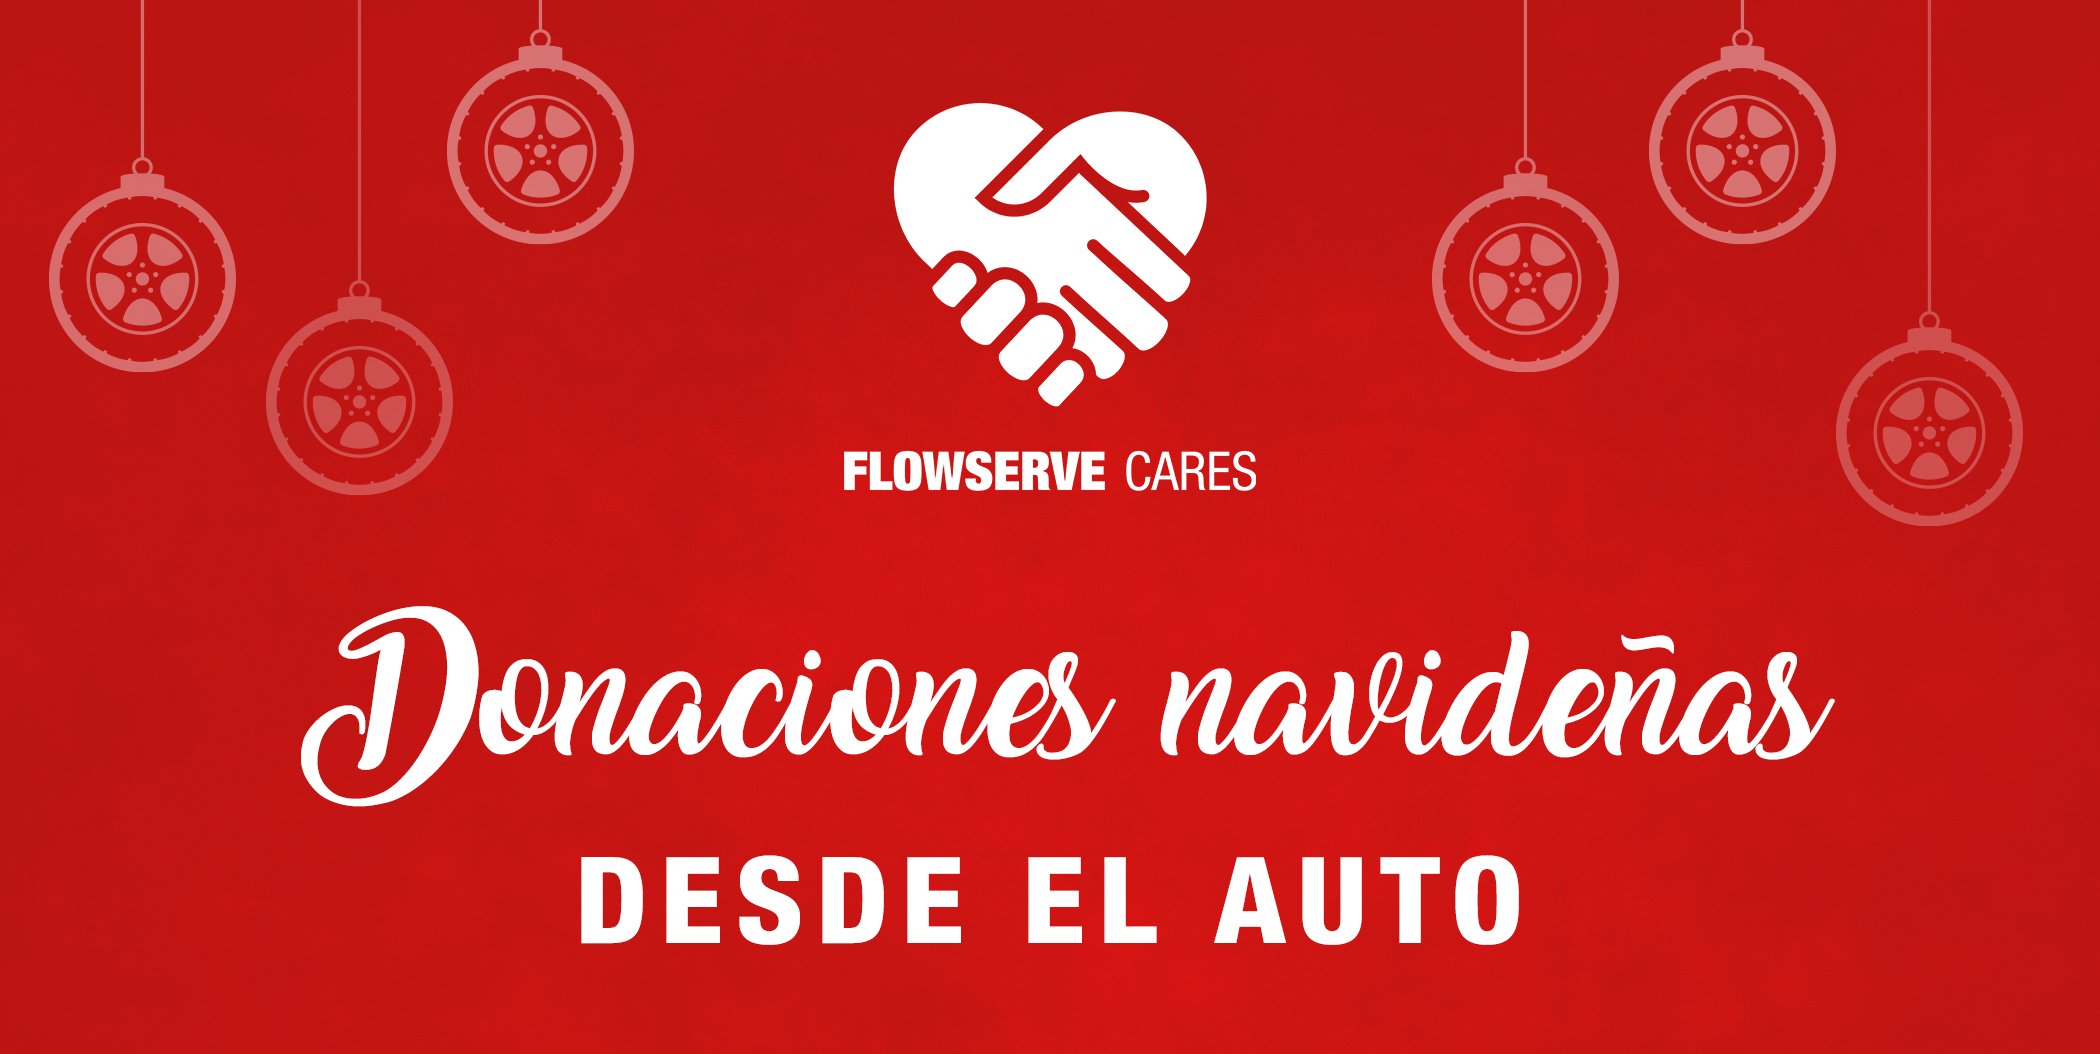 Campaña de donaciones navideñas desde el auto de Flowserve